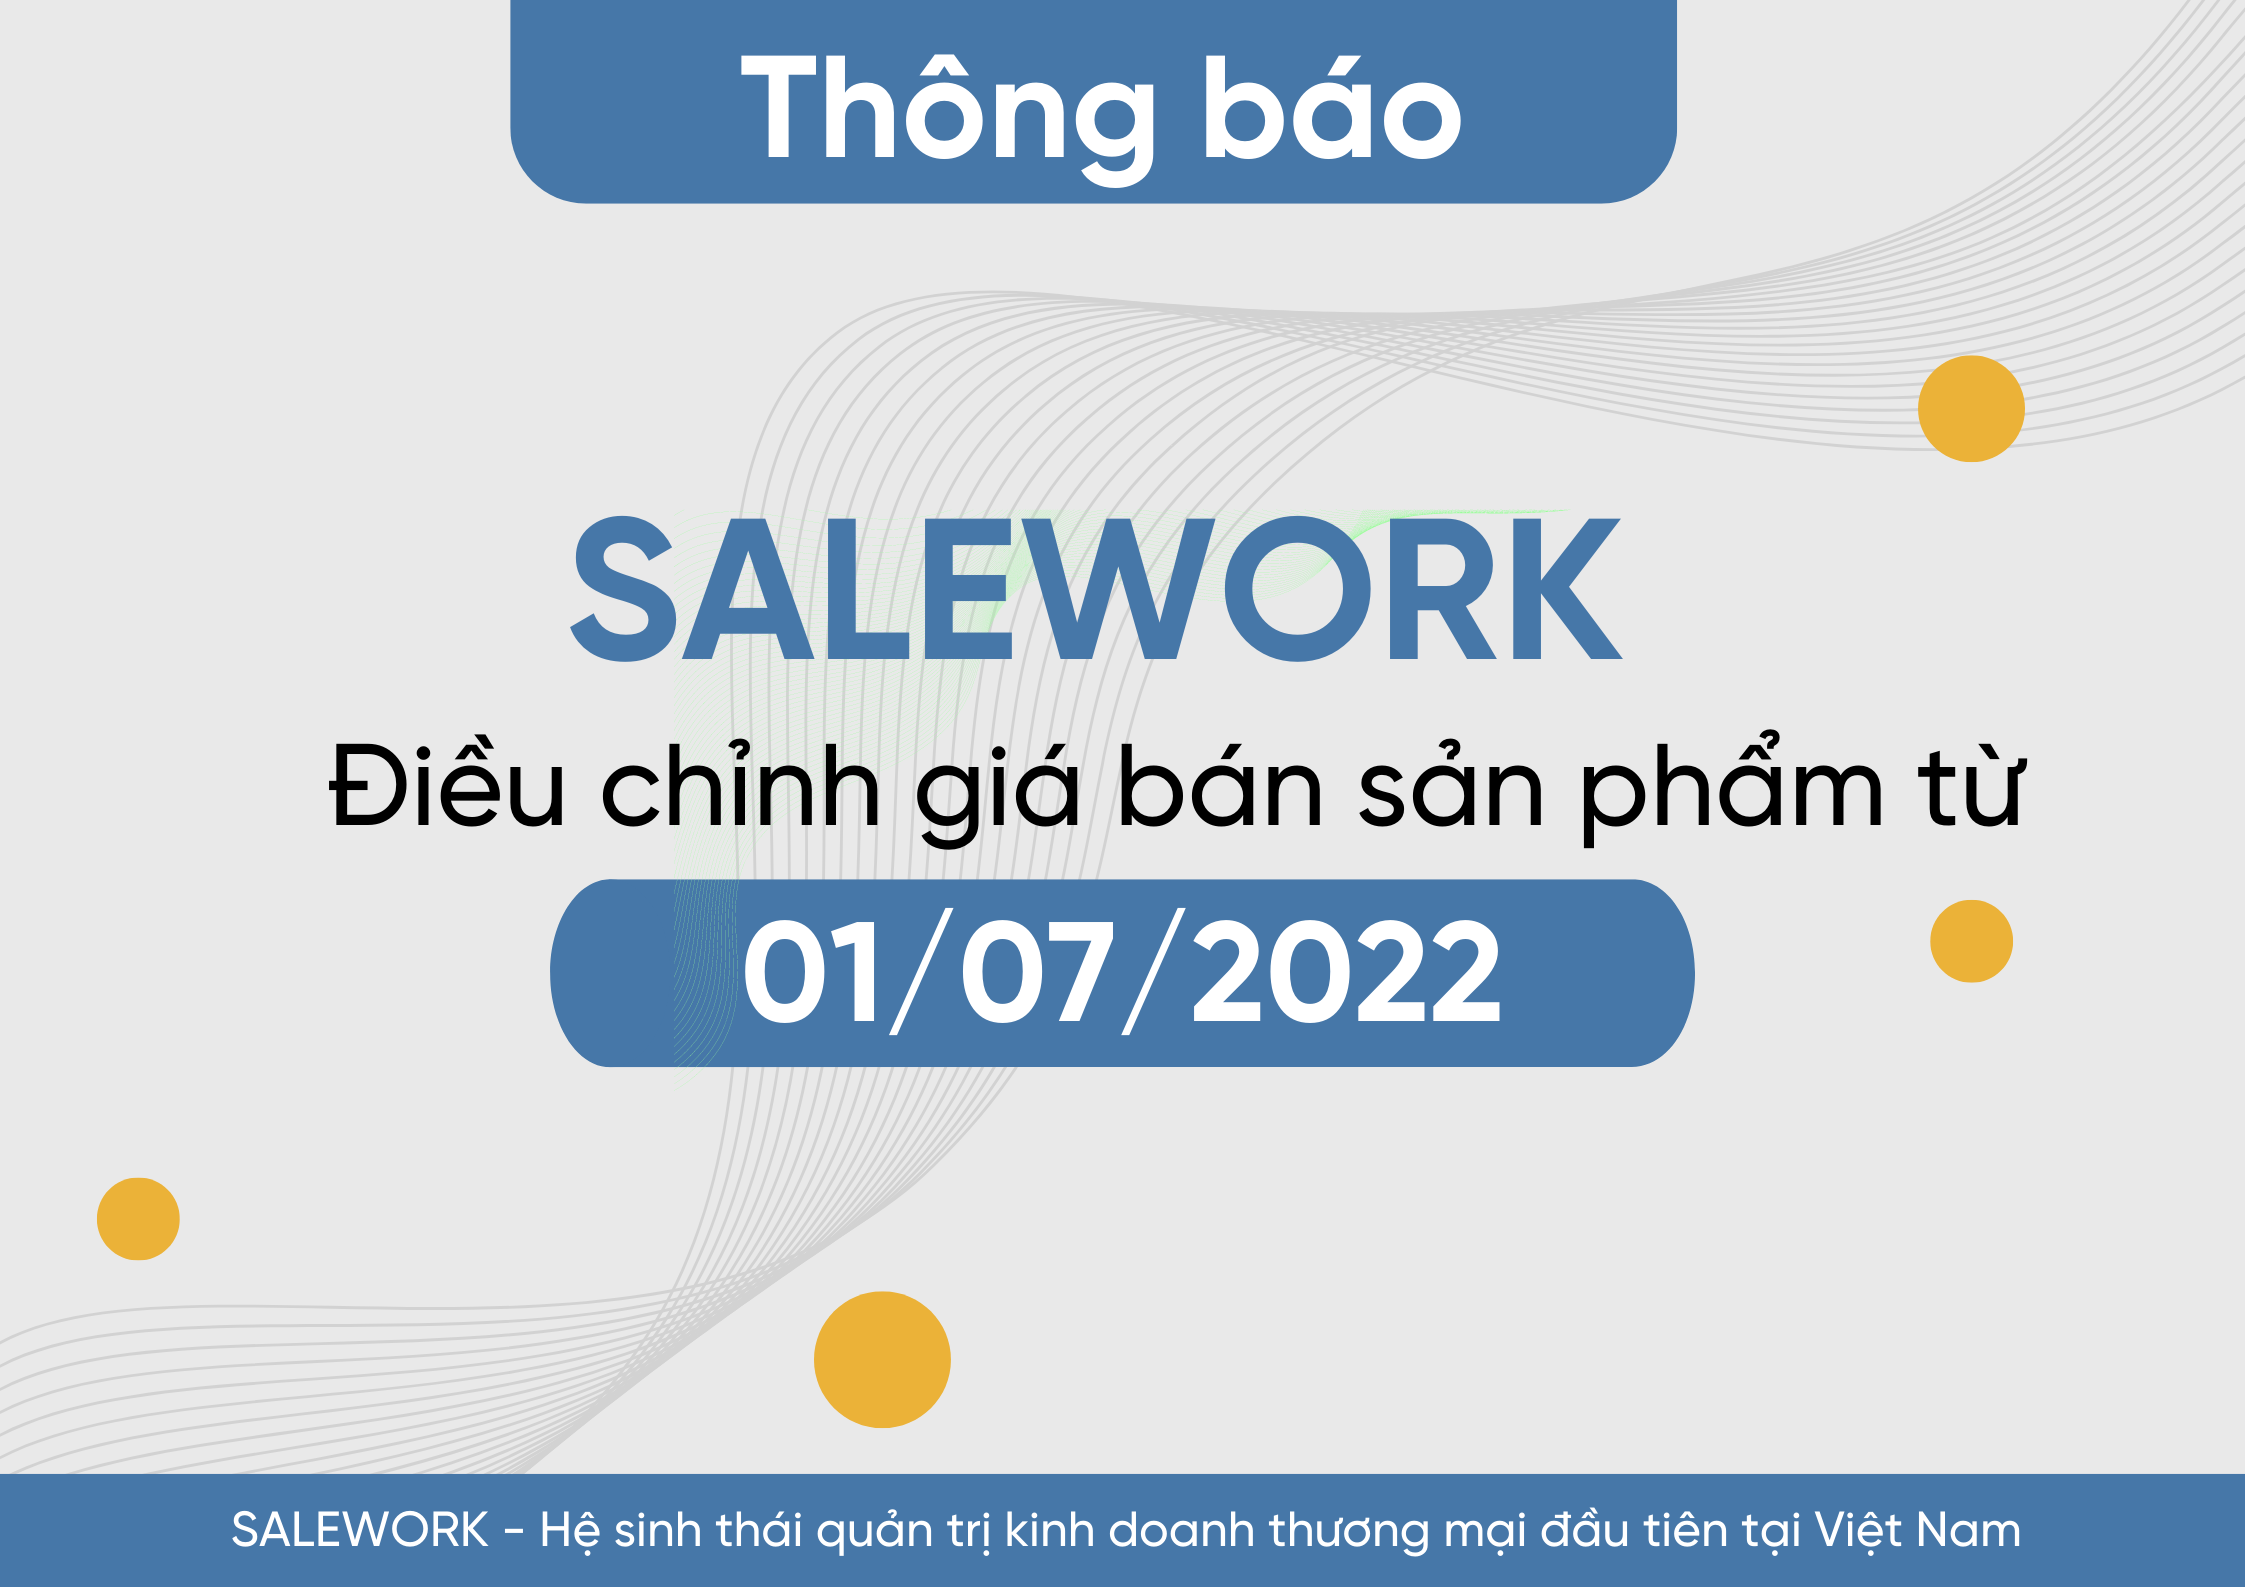 [Thông báo] Điều chỉnh giá bán và hình thức thanh toán các sản phẩm Salework từ ngày 01/07/2022 - 15